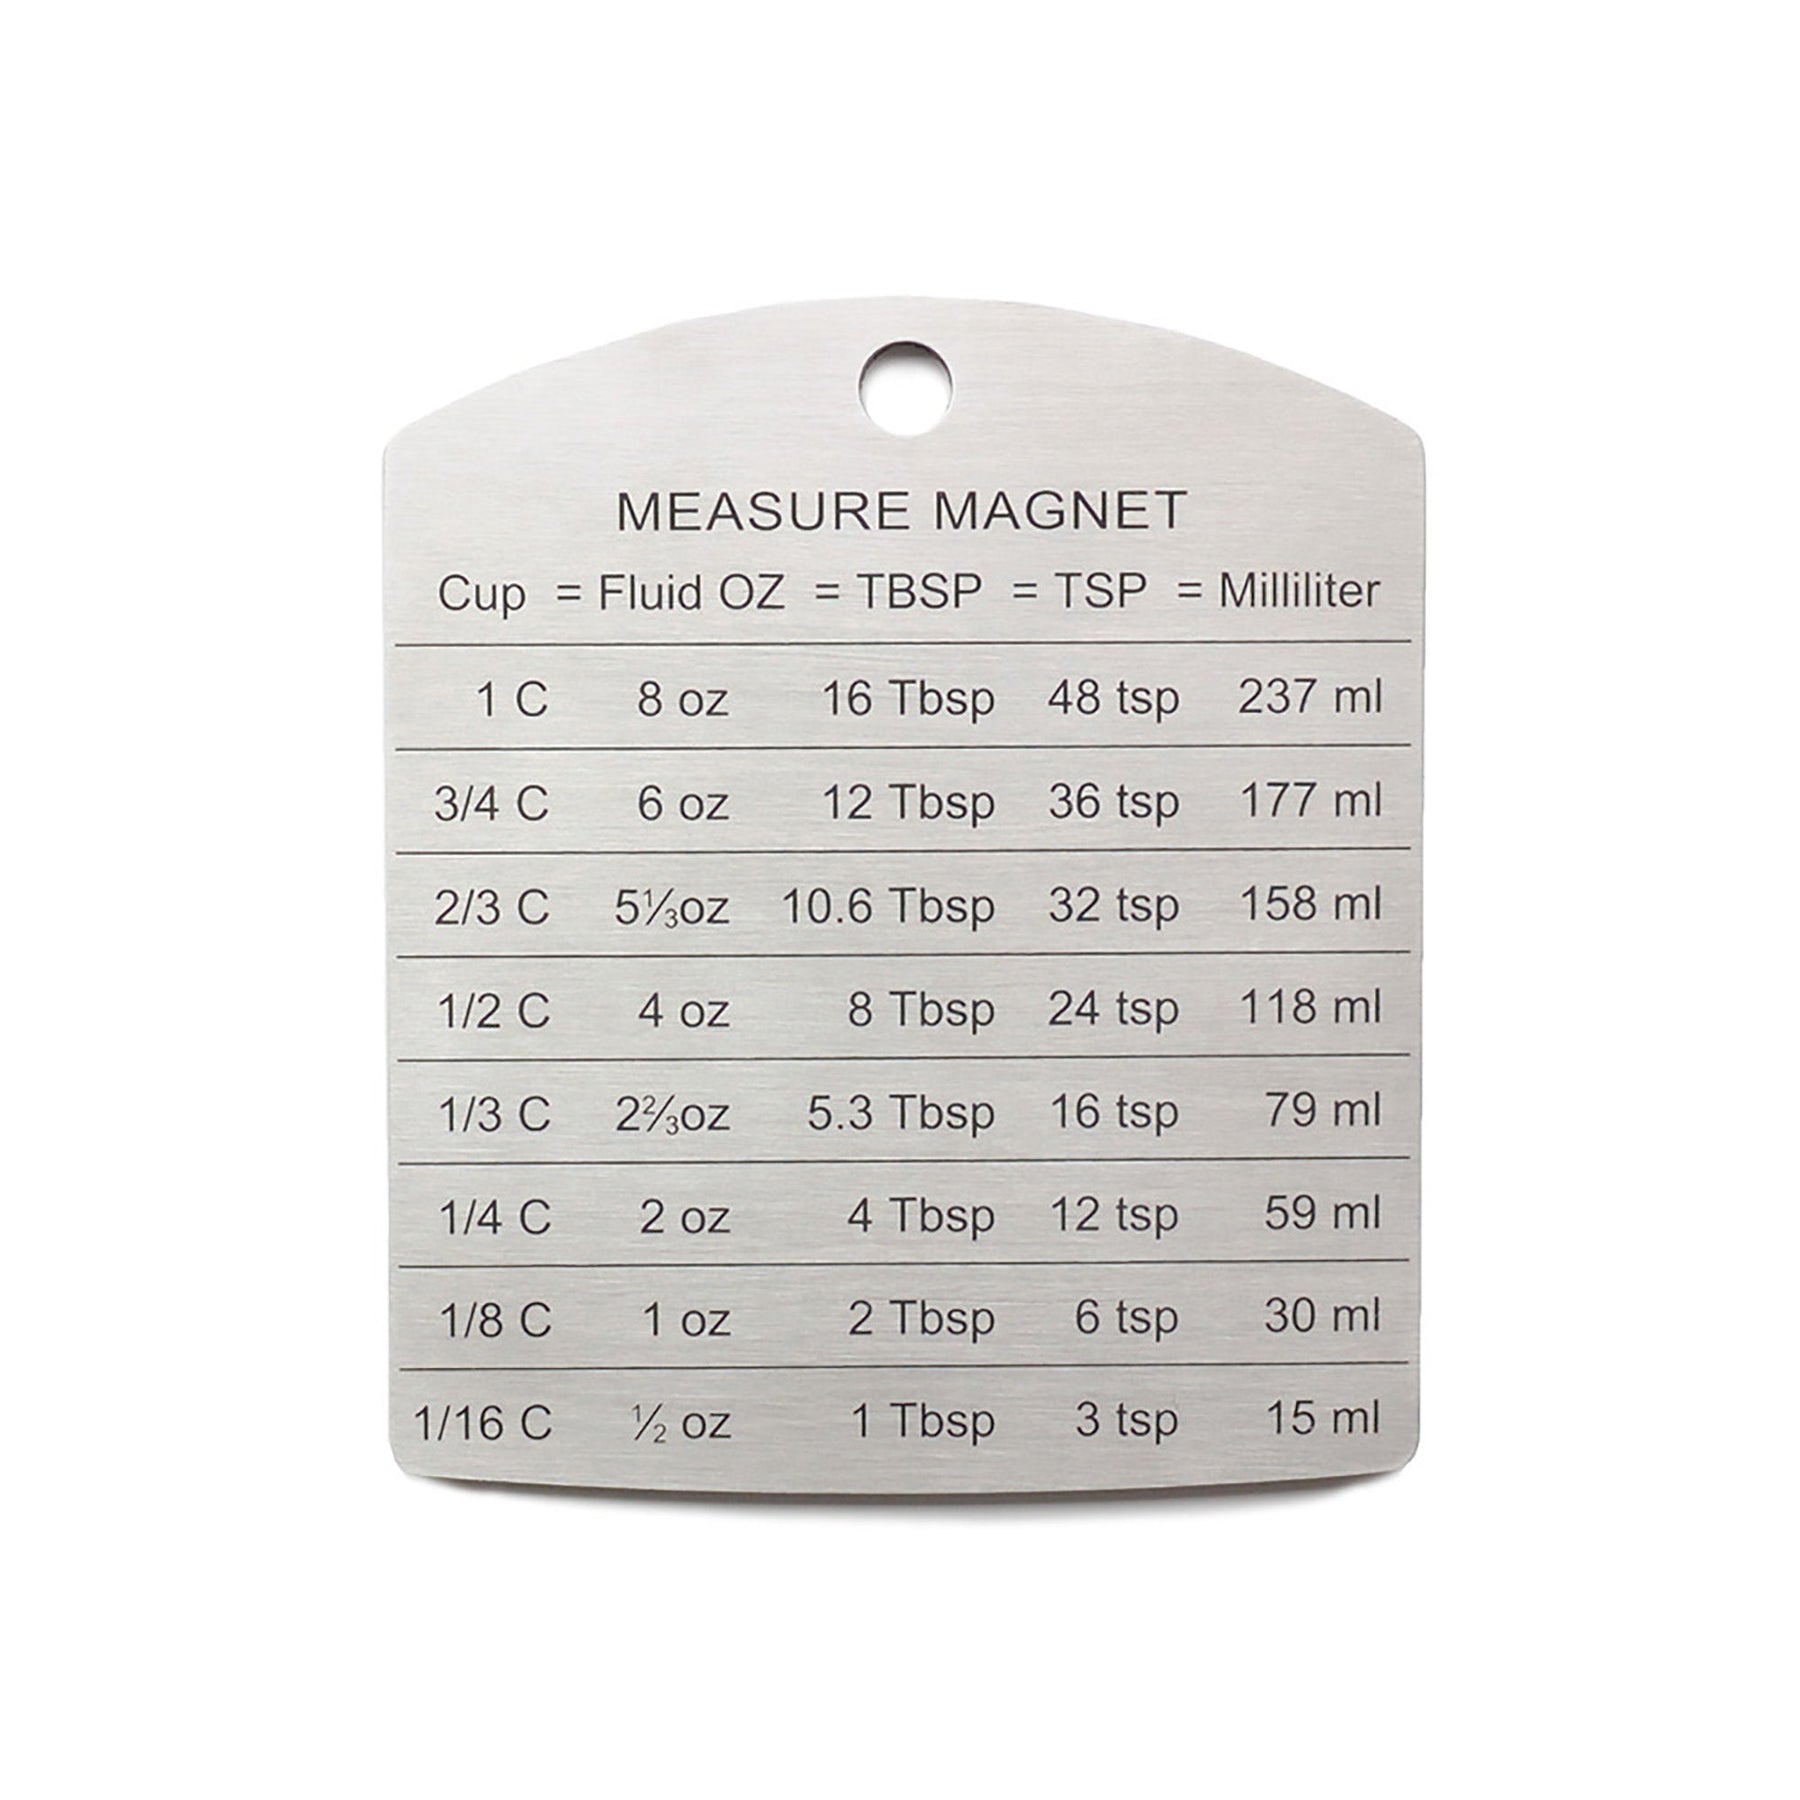 Measurement Magnet – RSVP International